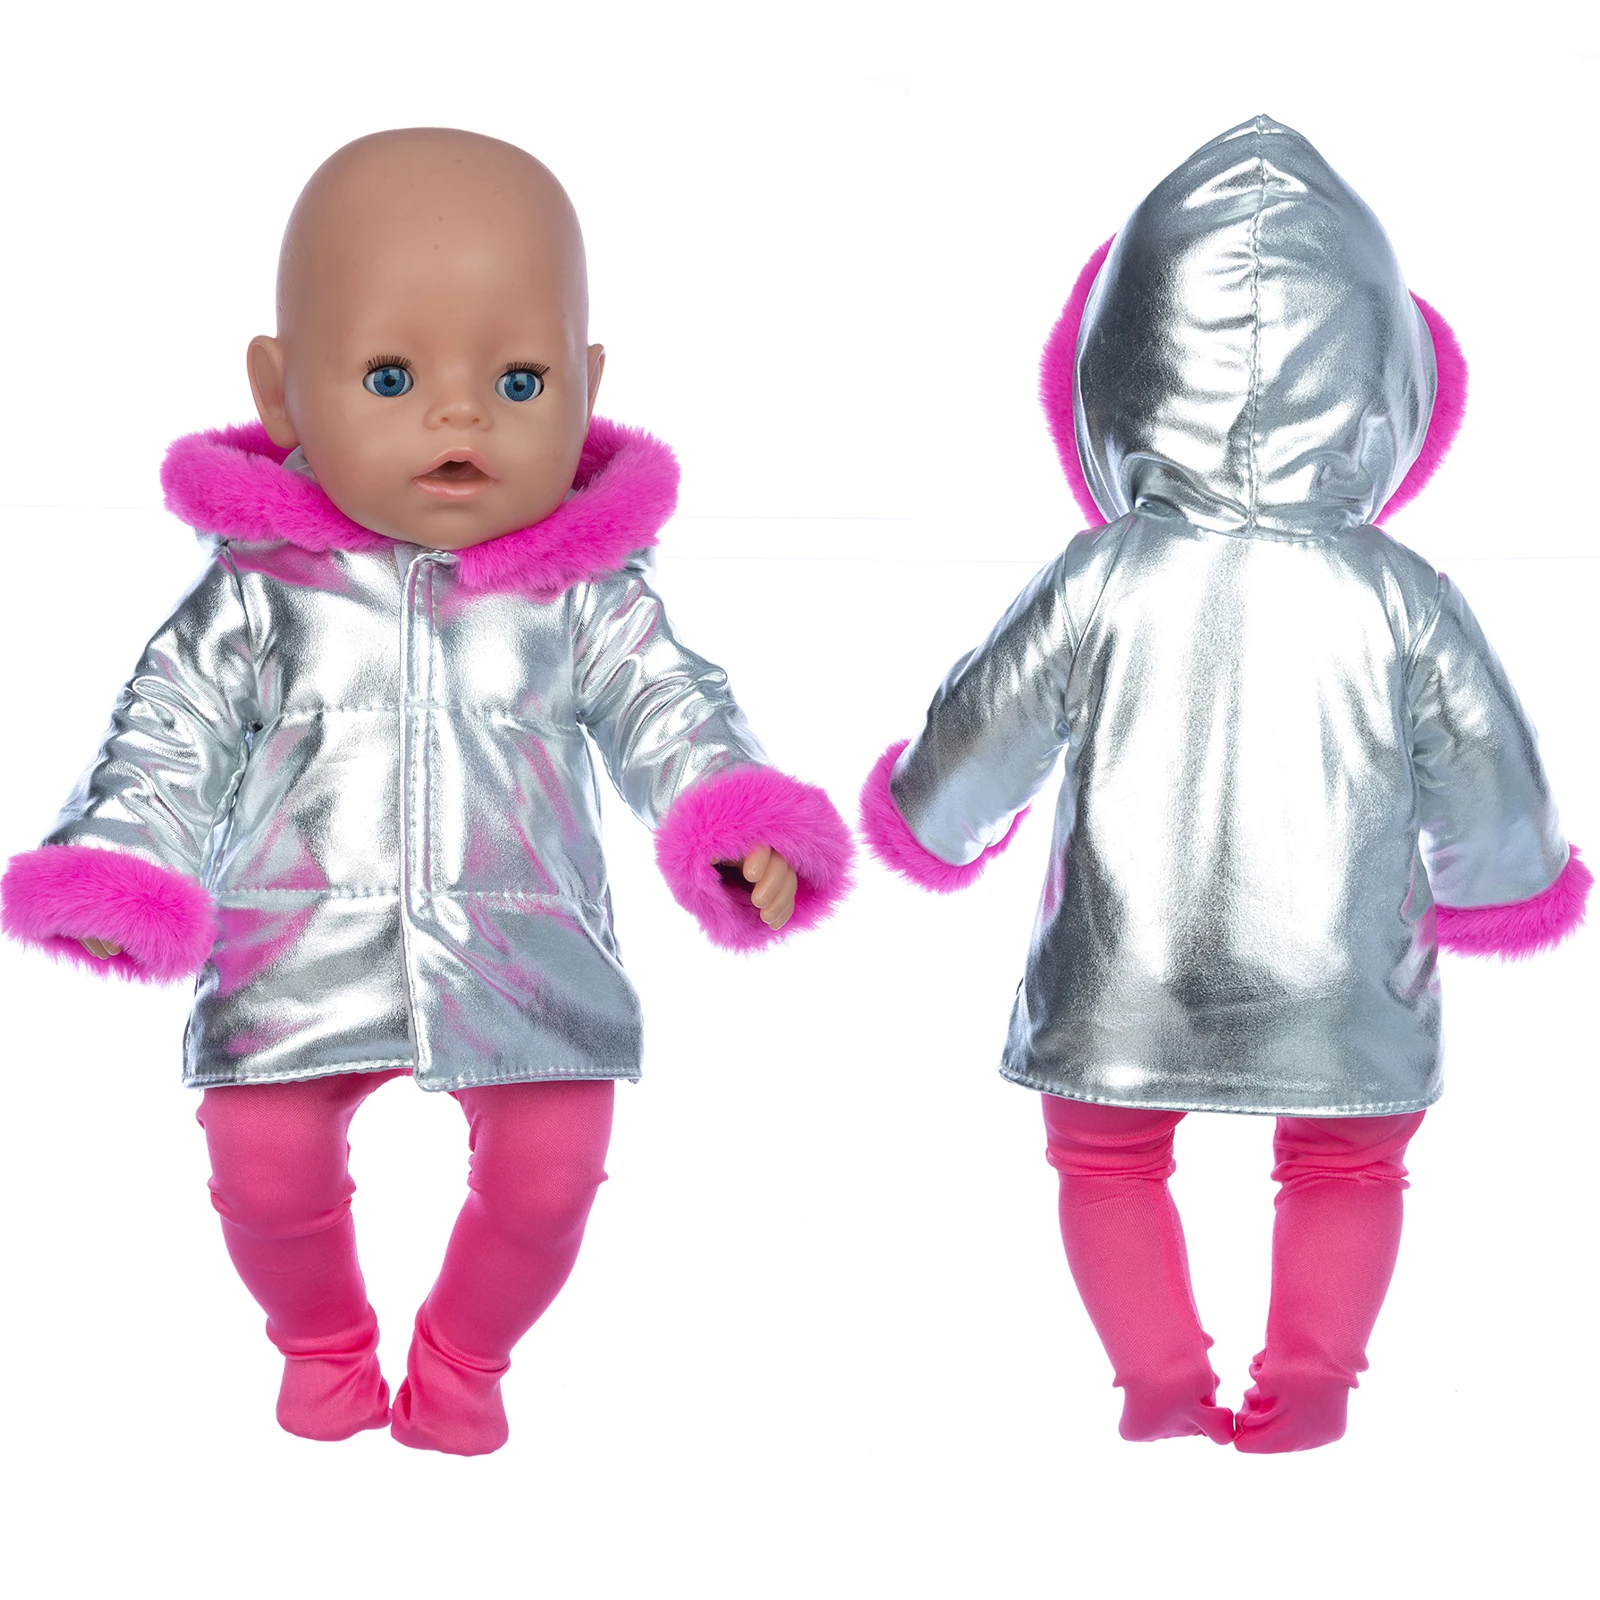 Gümüş Kış Takım Elbise oyuncak bebek giysileri Fit 17 inç 43cm Bebek Bebek Yeni Doğan oyuncak bebek giysileri